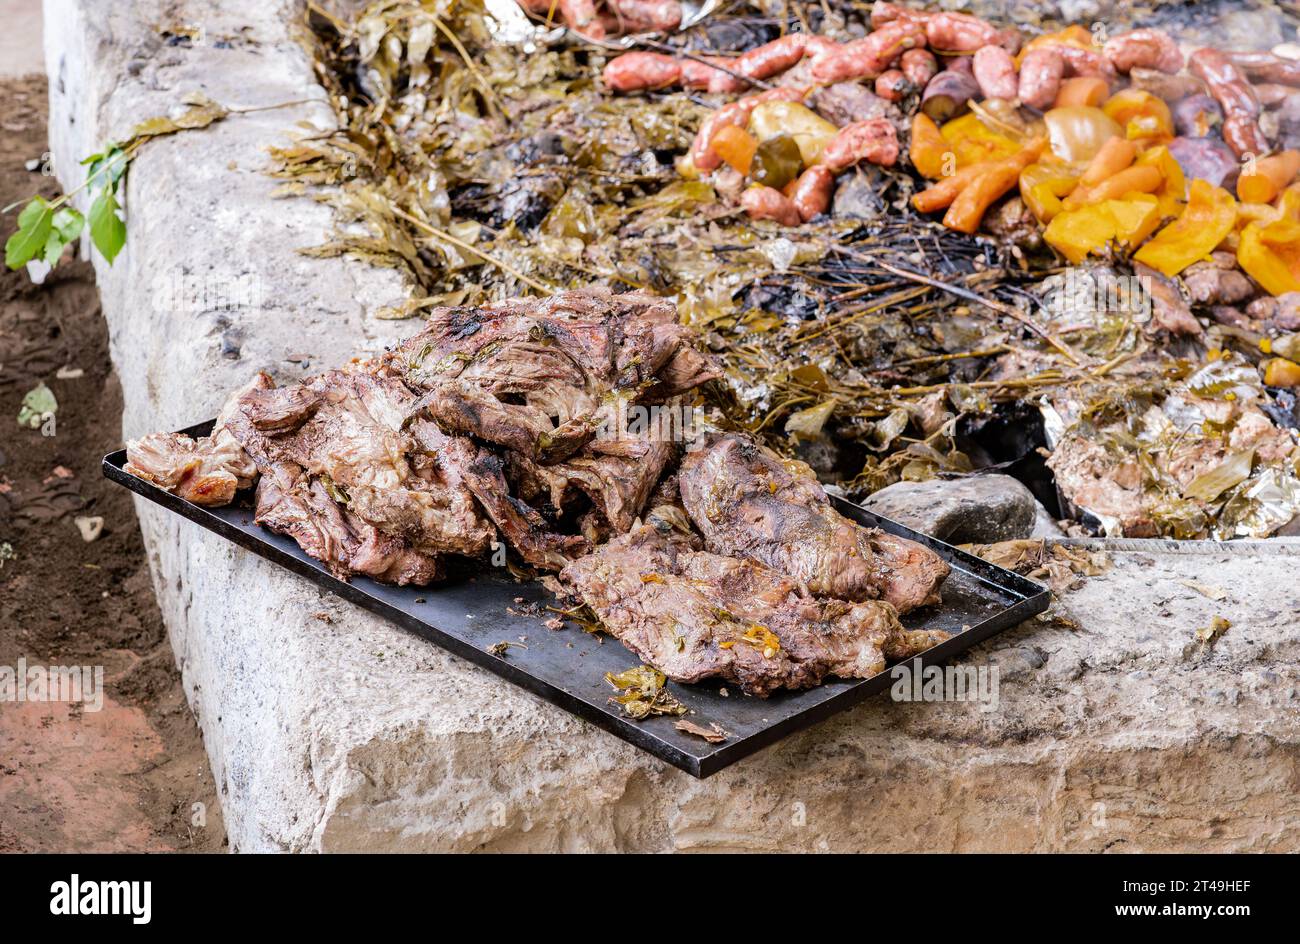 Ein Tablett mit Fleisch, das unterirdisch als Teil der Curanto-Zeremonie zubereitet wird, ein traditionelles Essen aus Patagonien. Colonia Suiza, Bariloche, Argentinien. Stockfoto